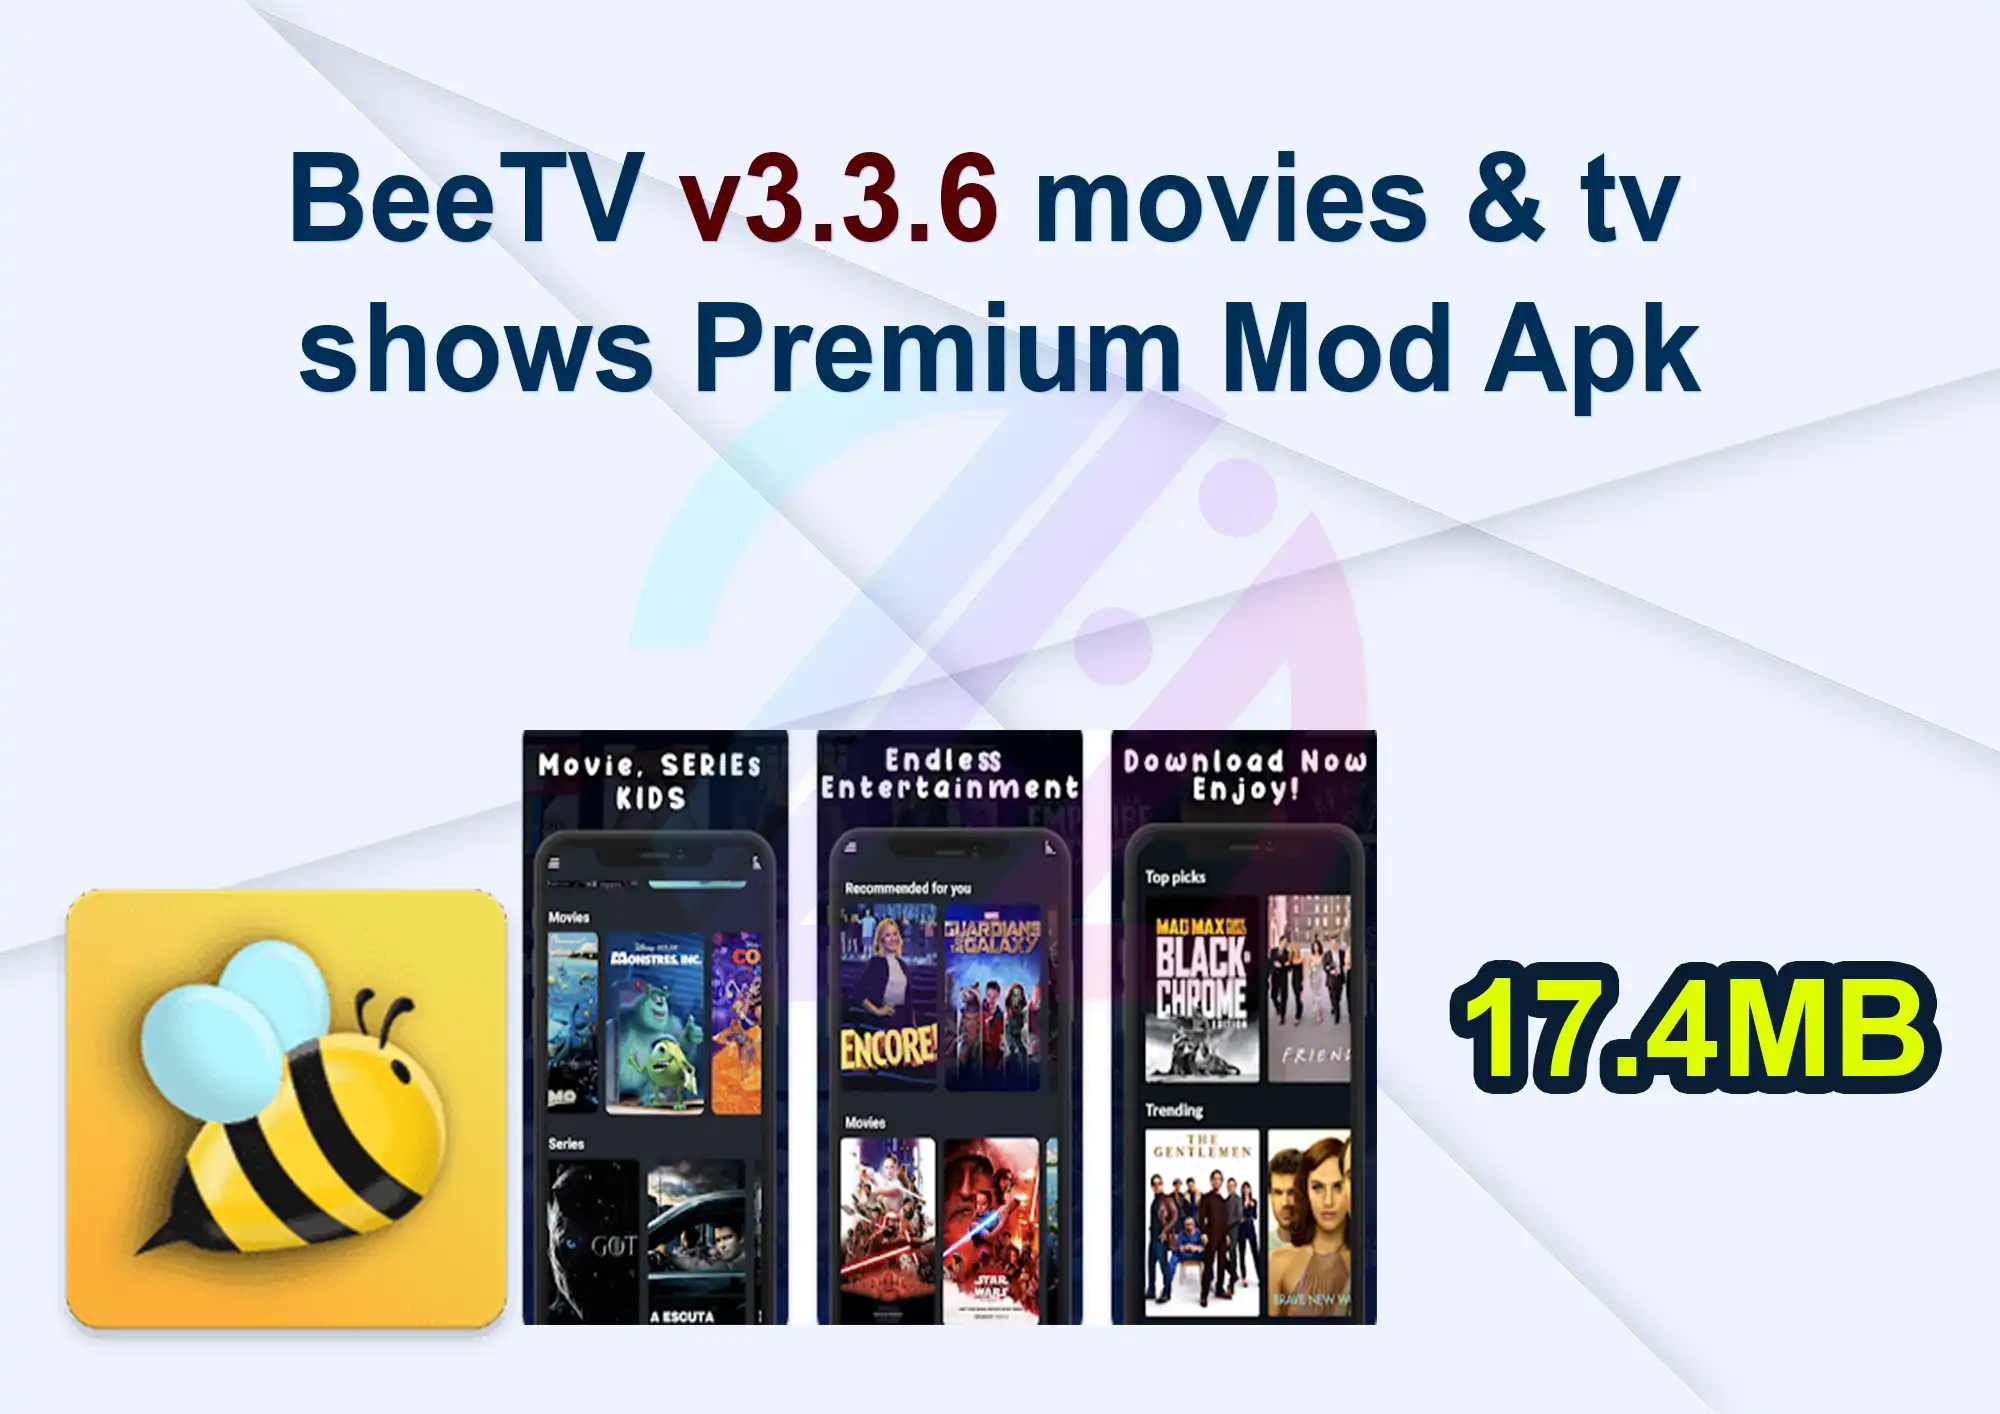 BeeTV v3.3.6 movies & tv shows Premium Mod Apk